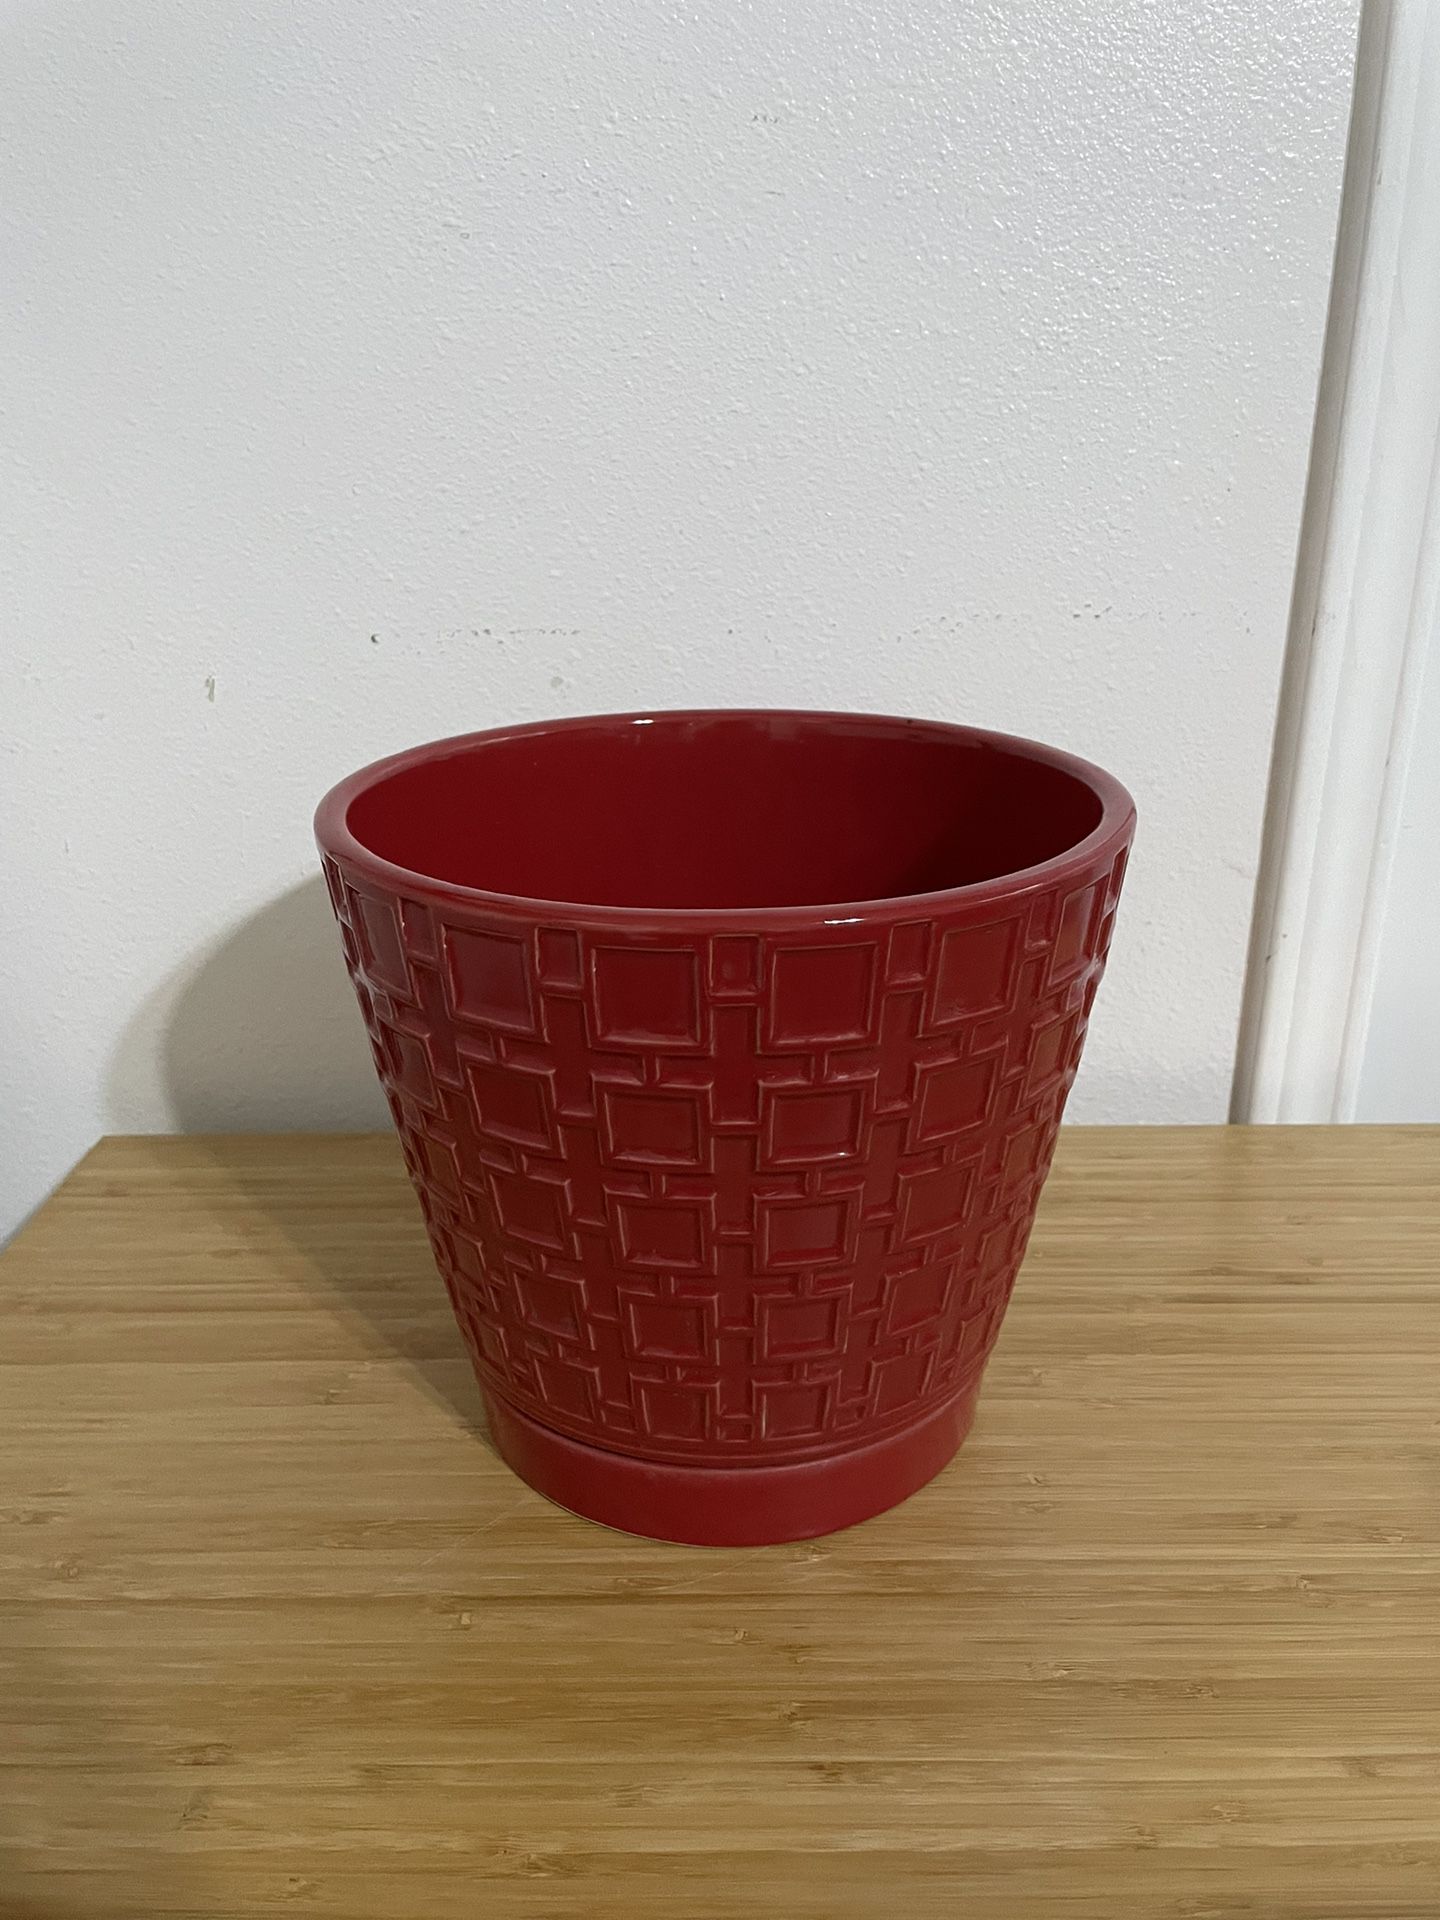 Trendspot 9 in. Tall Red Cubelinx Ceramic Planter